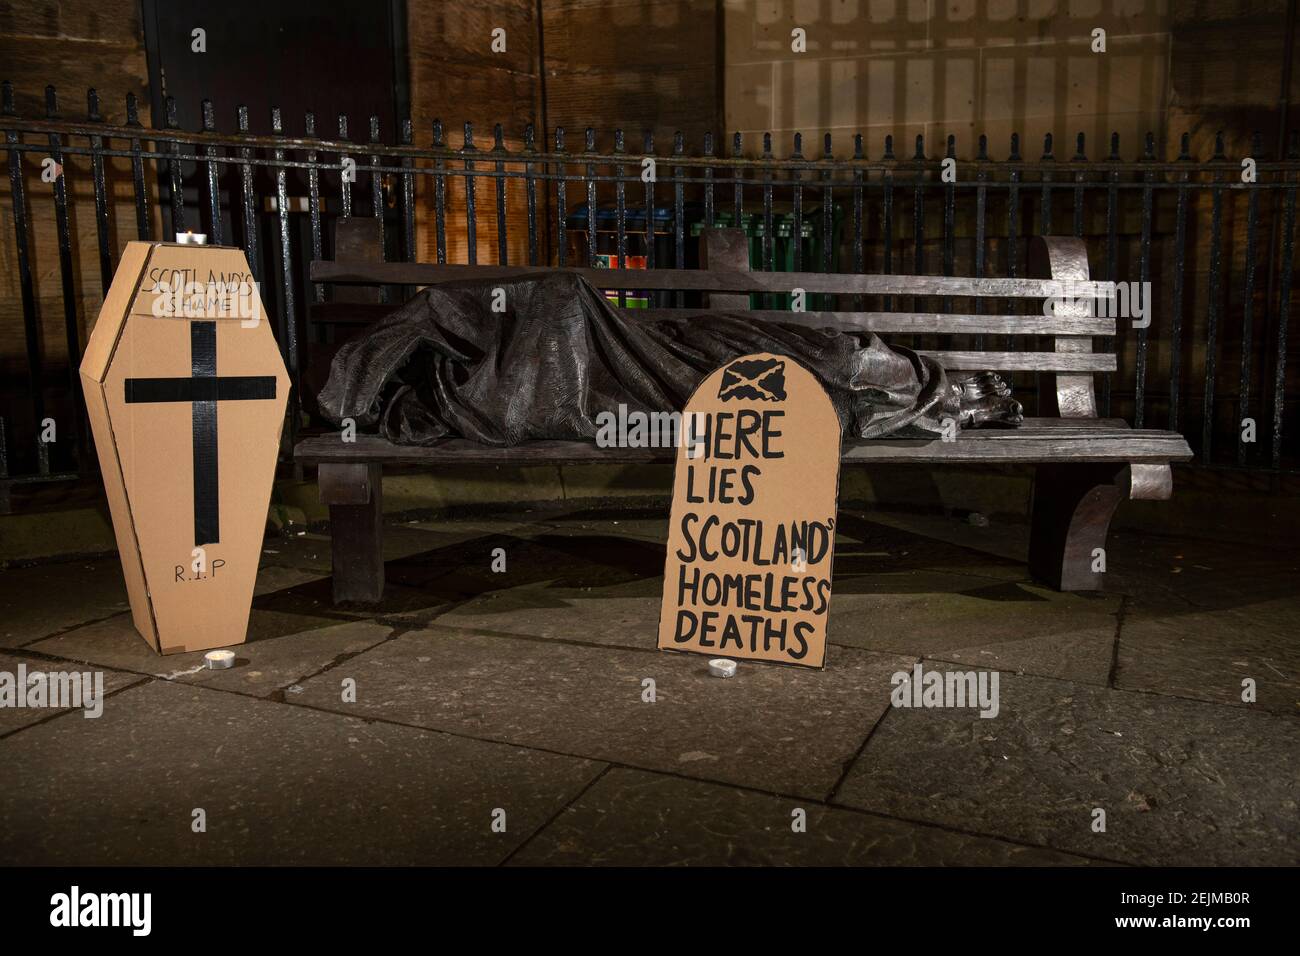 Glasgow, Schottland, Großbritannien. Februar 2021, 22nd. Im Bild: Eine Skulptur eines Obdachlosen, der auf einer Parkbank schläft, mit einem grabsteinförmigen Plakat, auf dem steht: „HIER LIEGEN OBDACHLOSE IN SCHOTTLAND“. Heute, am 23rd. Februar 21, hat die schottische Regierung die Zahl der Obdachlosen-Todesfälle 3 Tage früher freigegeben, die um 11% höher sind als im letzten Jahr. Der Link https://www.nrscotland.gov.uk/news/2021/homeless-deaths-2019 zeigt den Artikel heute. Quelle: Colin Fisher/Alamy Live News Stockfoto